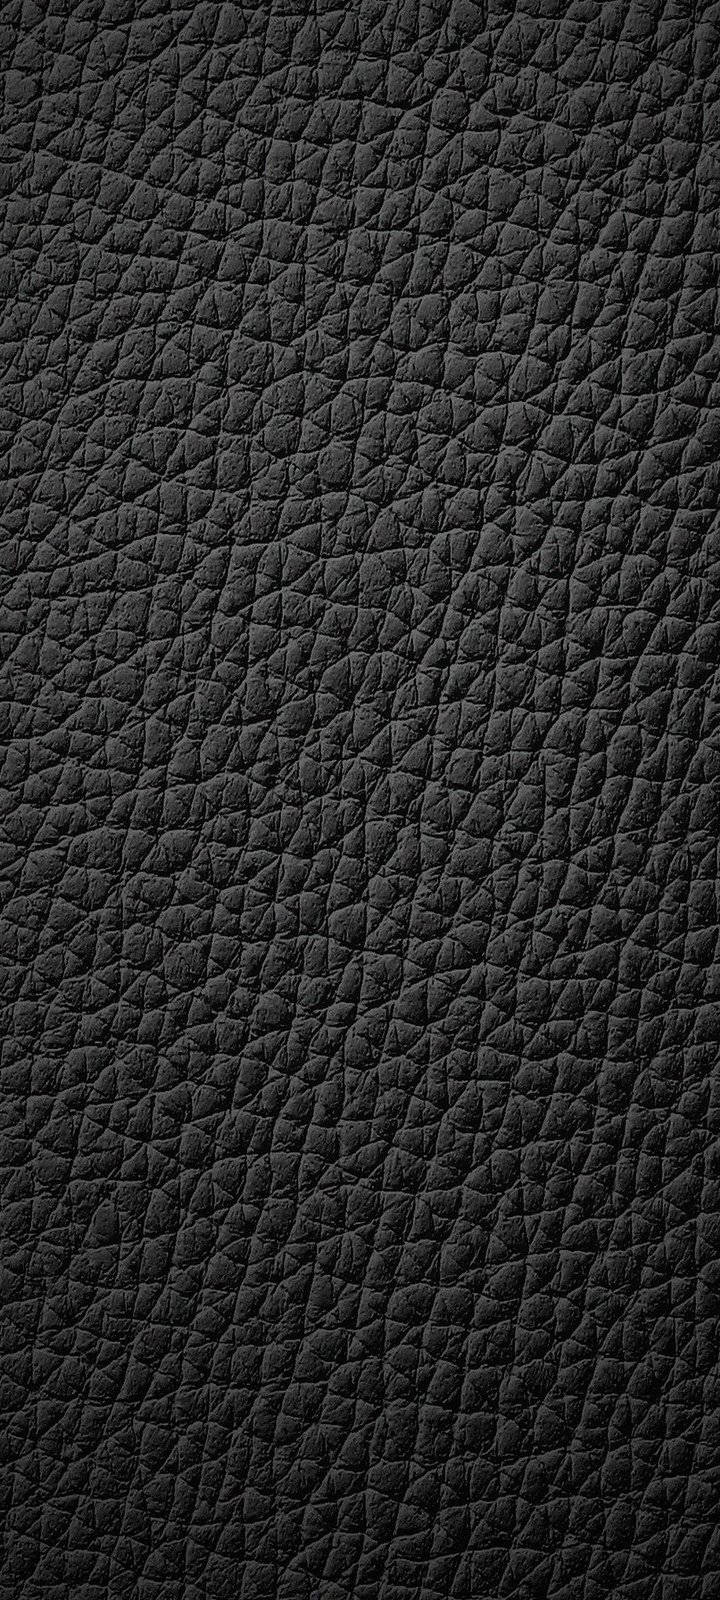 Vivo Y20 Black Leather Texture